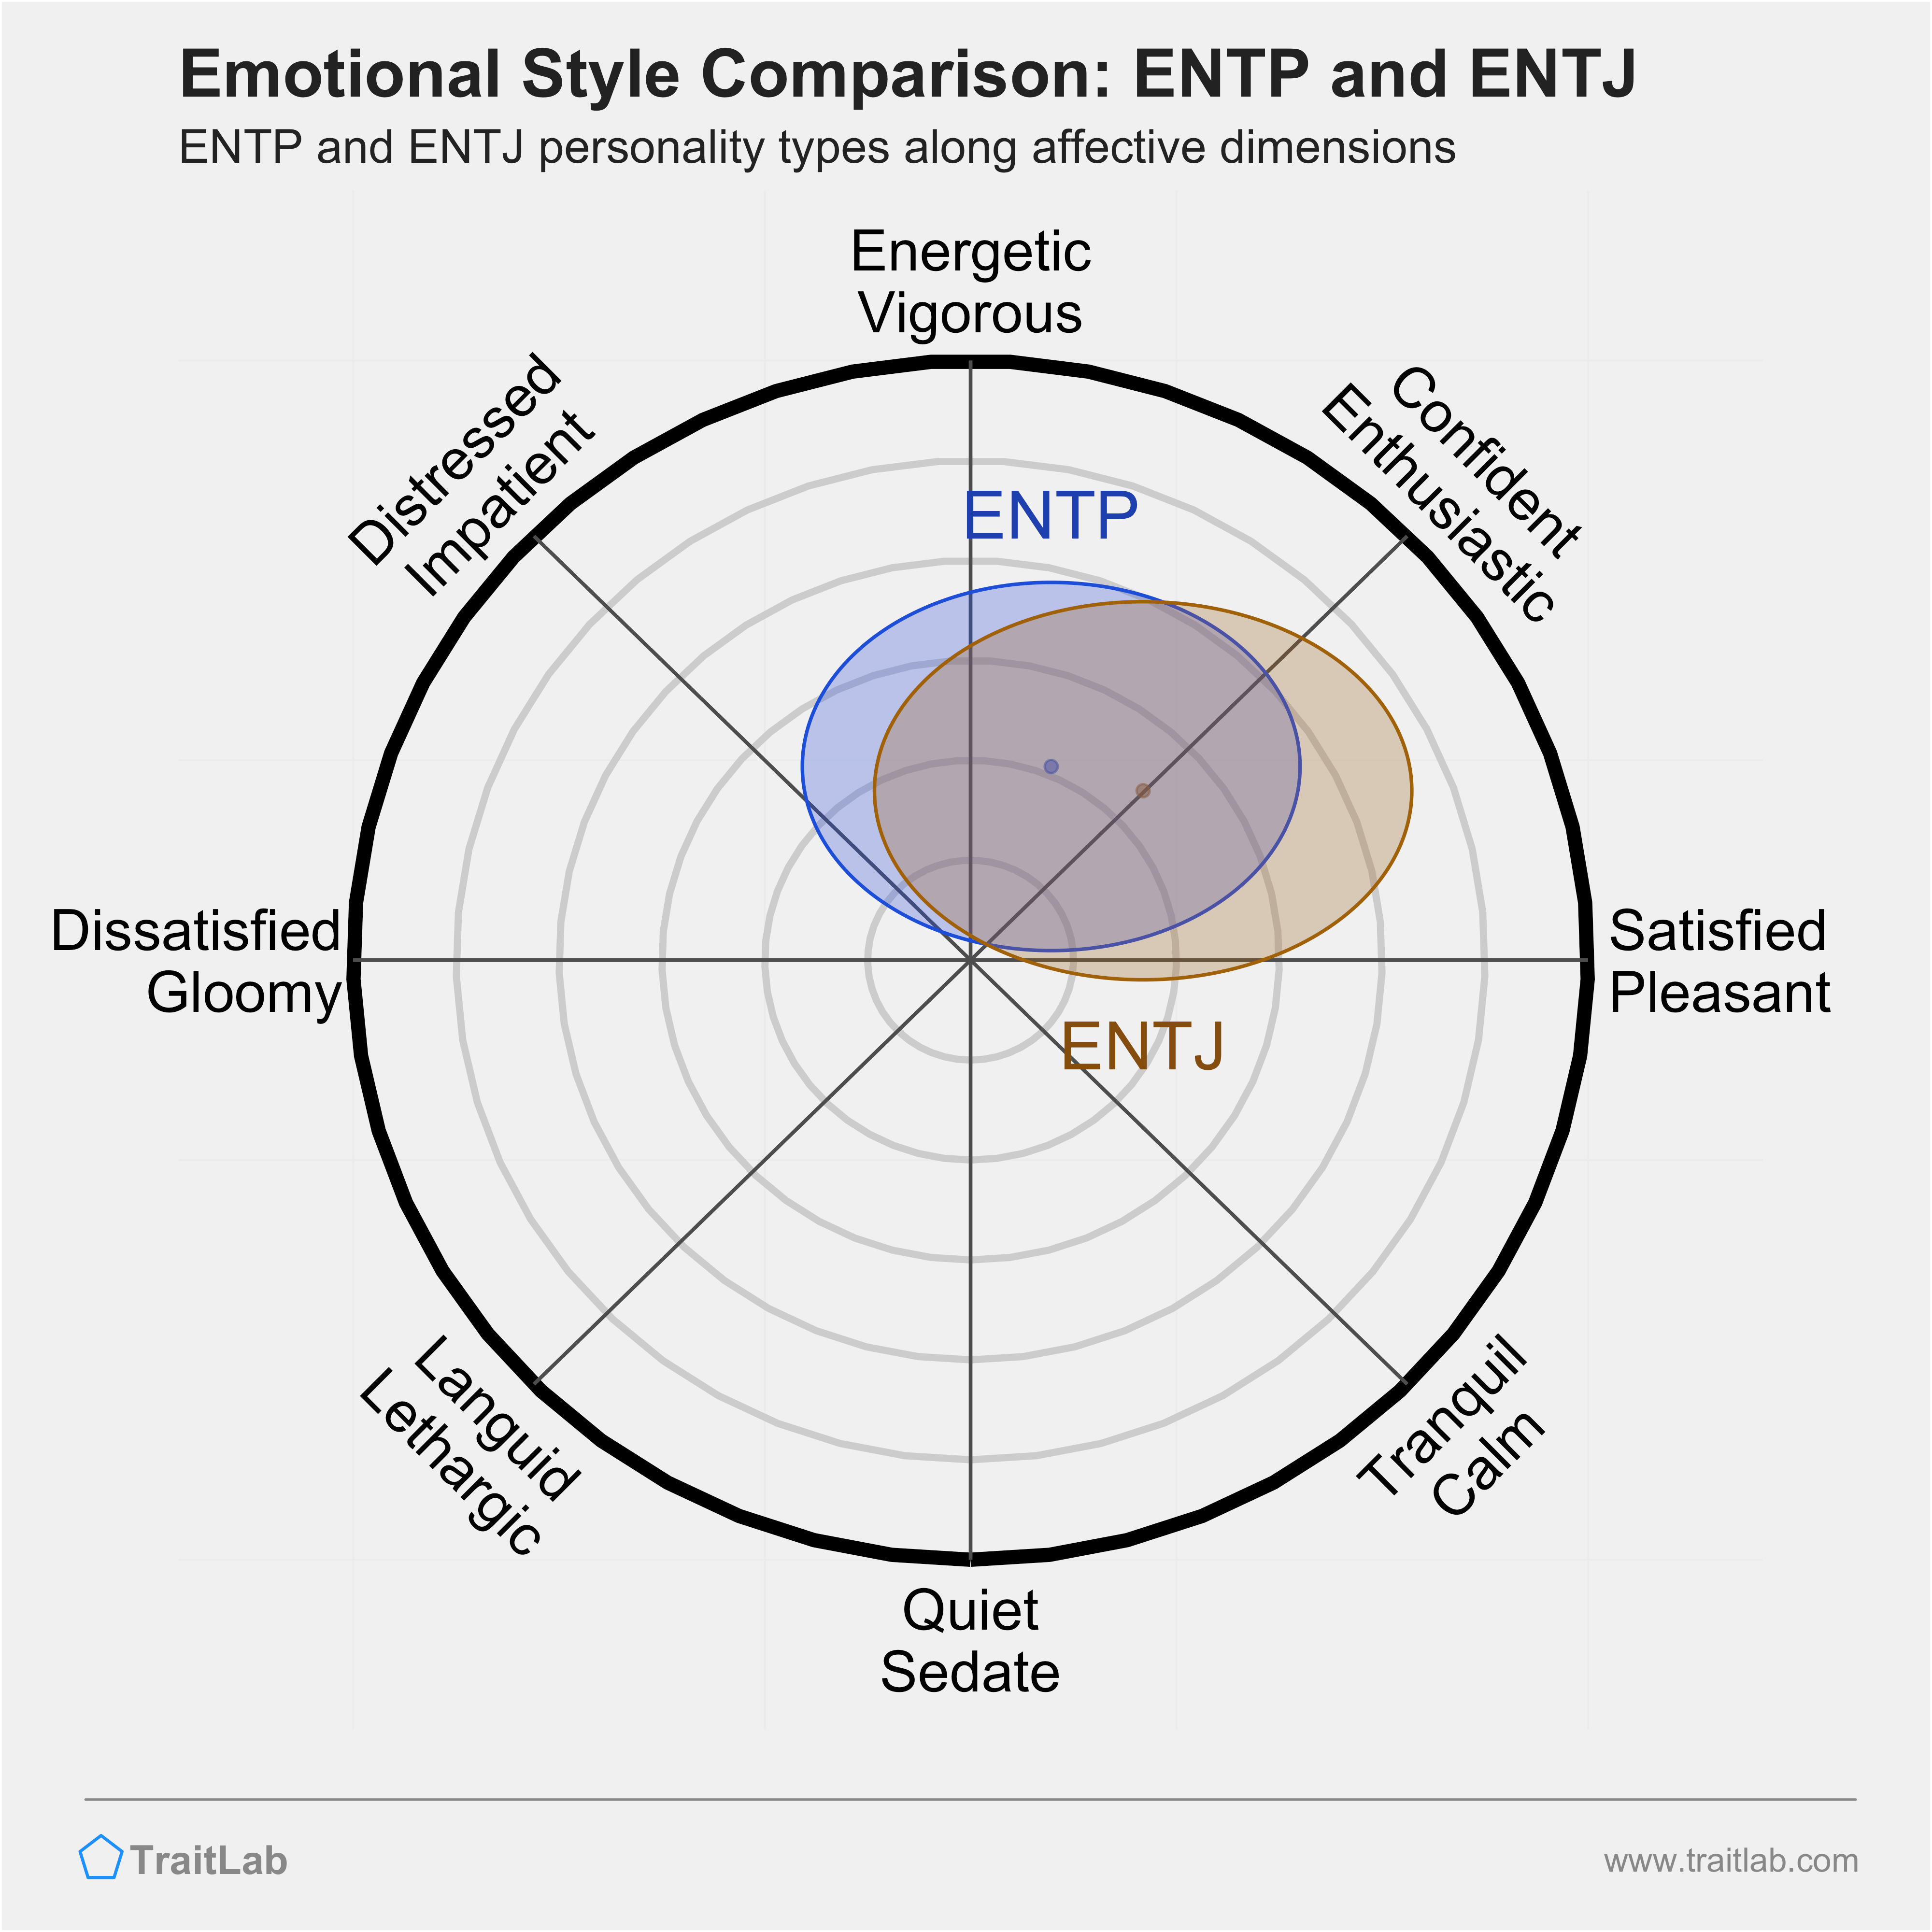 ENTP and ENTJ comparison across emotional (affective) dimensions